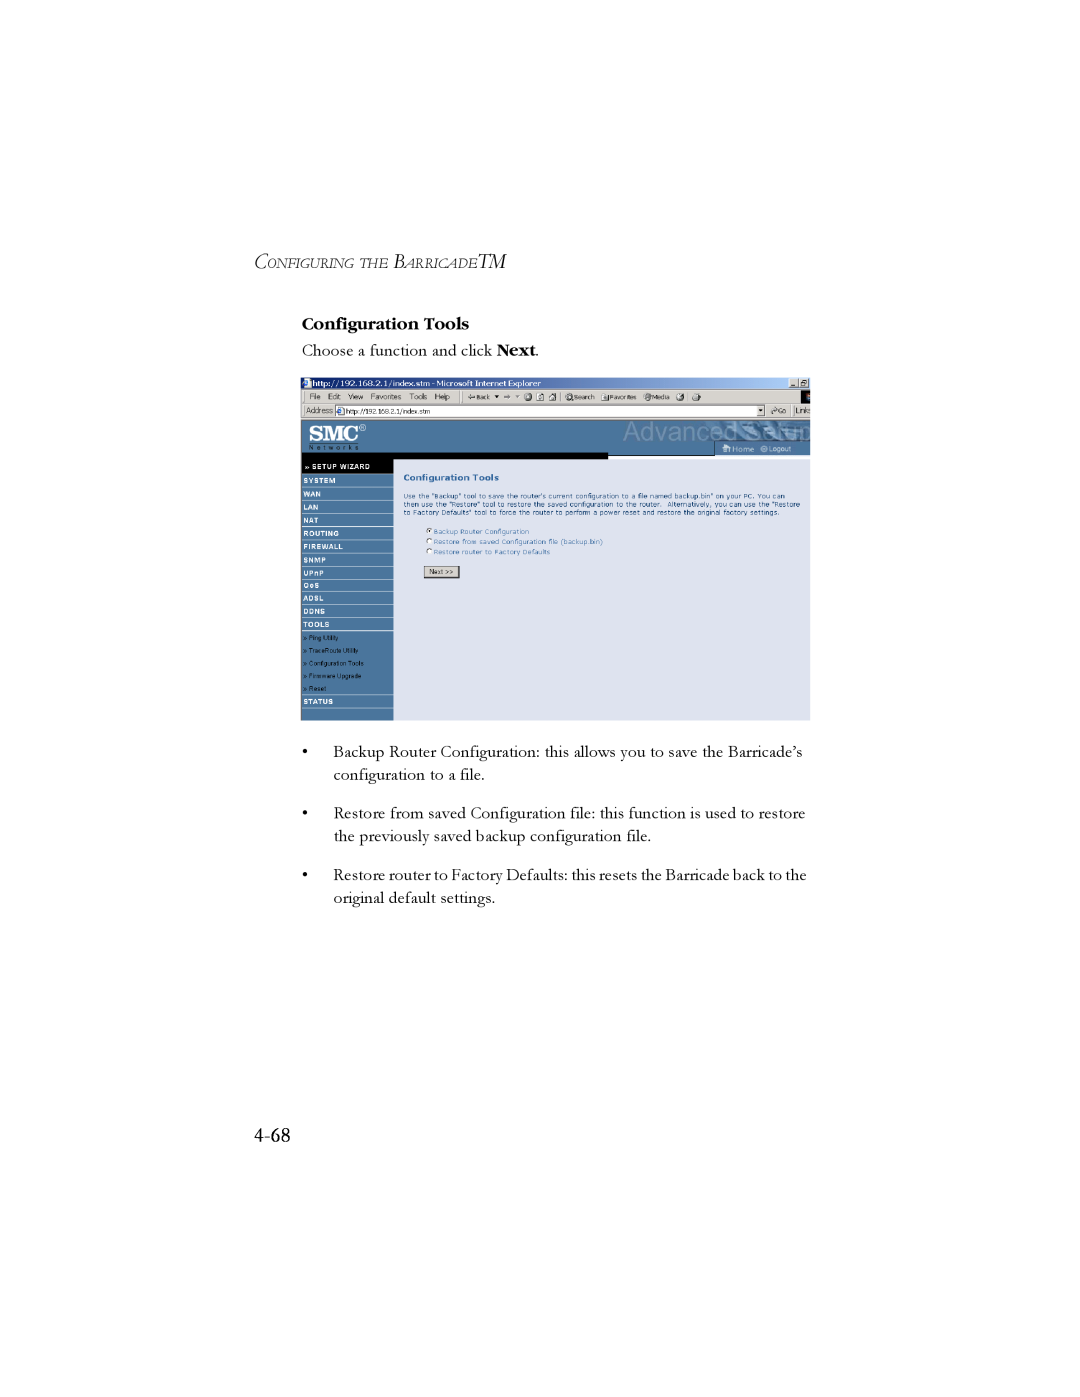 SMC Networks SMC7904BRB2 manual 4-68, Configuration Tools 